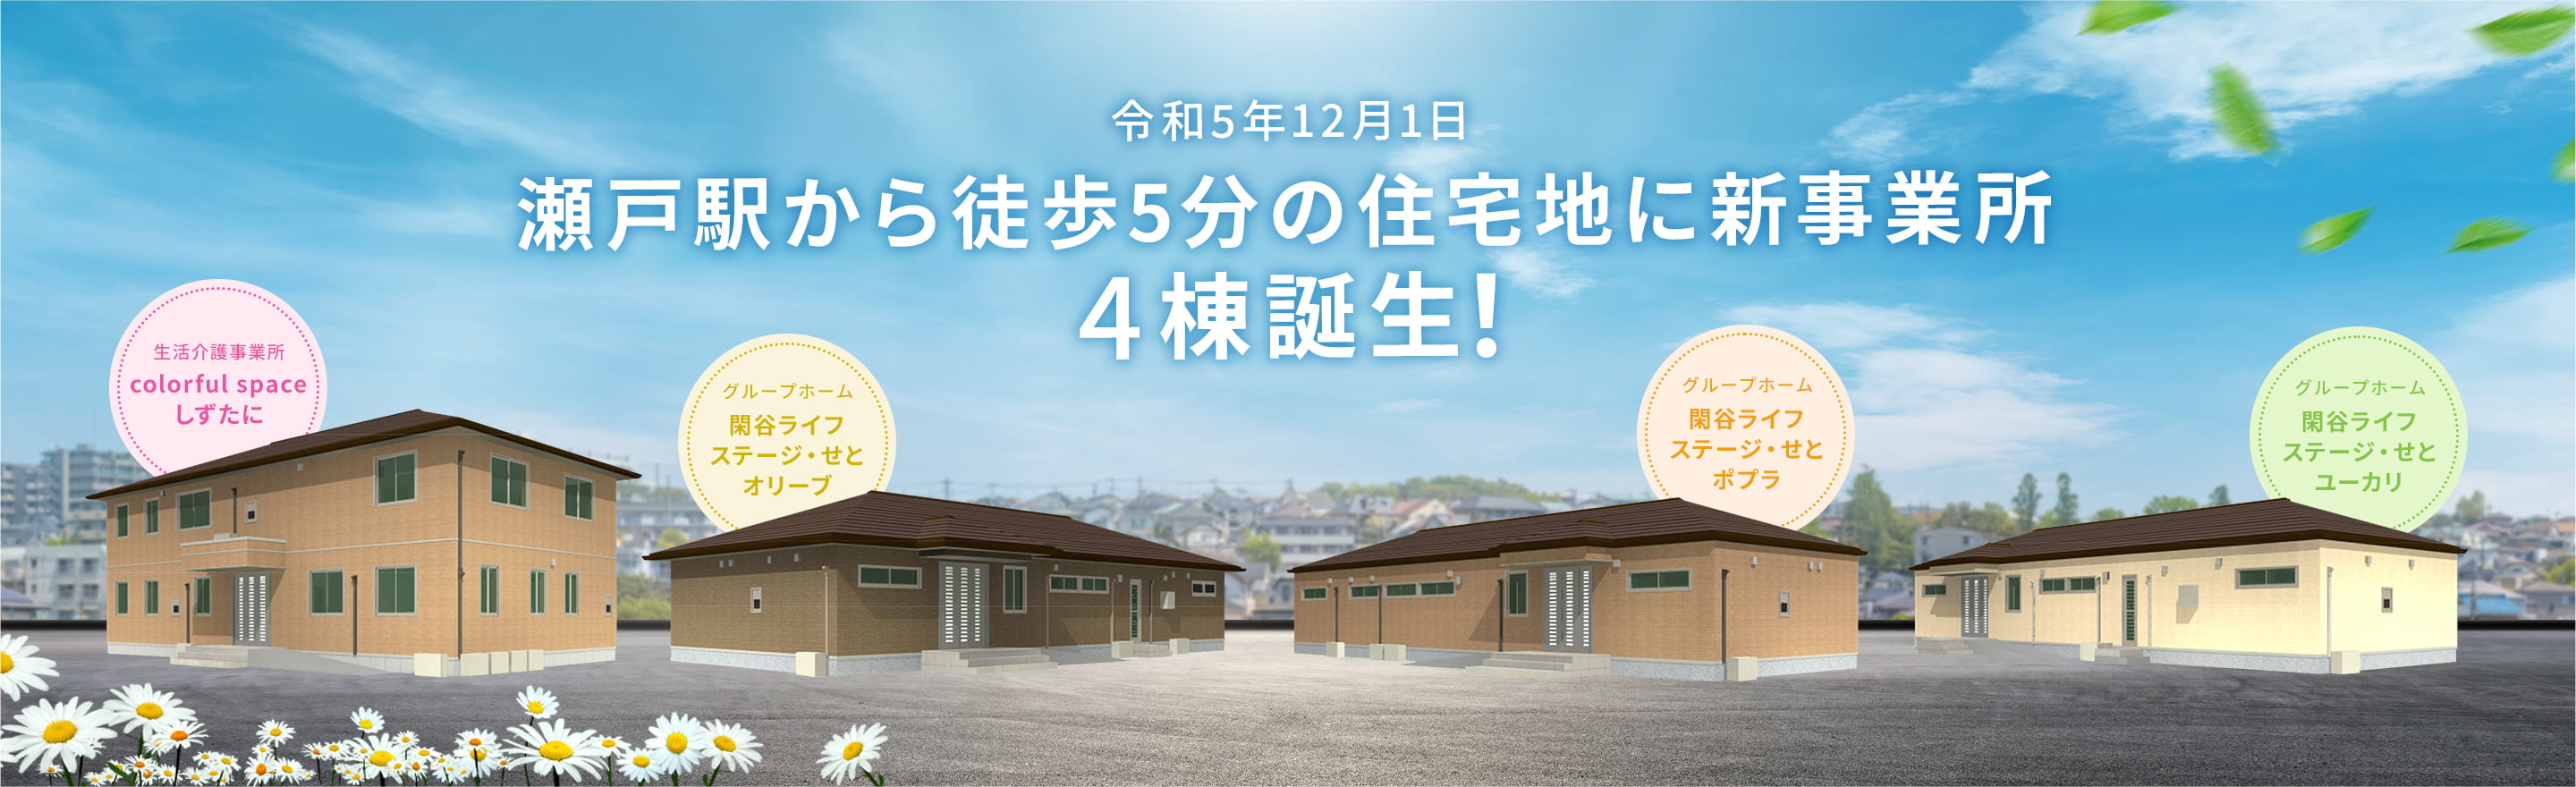 瀬戸駅から徒歩5分の住宅地に新事業所4棟誕生！